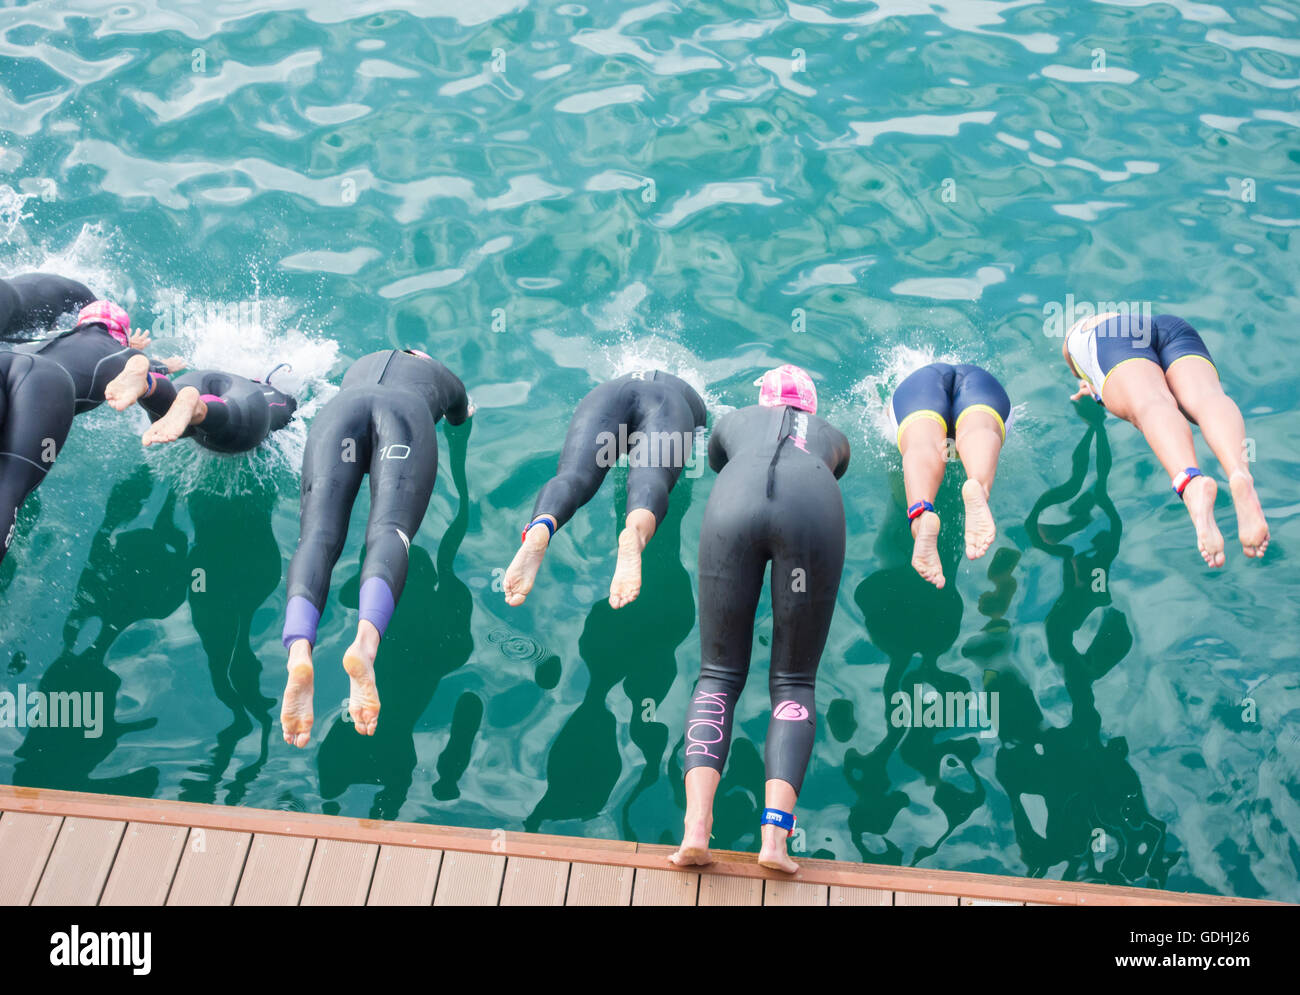 Las Palmas, Gran Canaria, Kanarische Inseln, Spanien. 17. Juli 2016. Start des Womens 1500m Schwimmen im Atlantischen Ozean am Triathlon Las Palmas auf Gran Canaria Kredit: Alan Dawson News/Alamy Live News Stockfoto